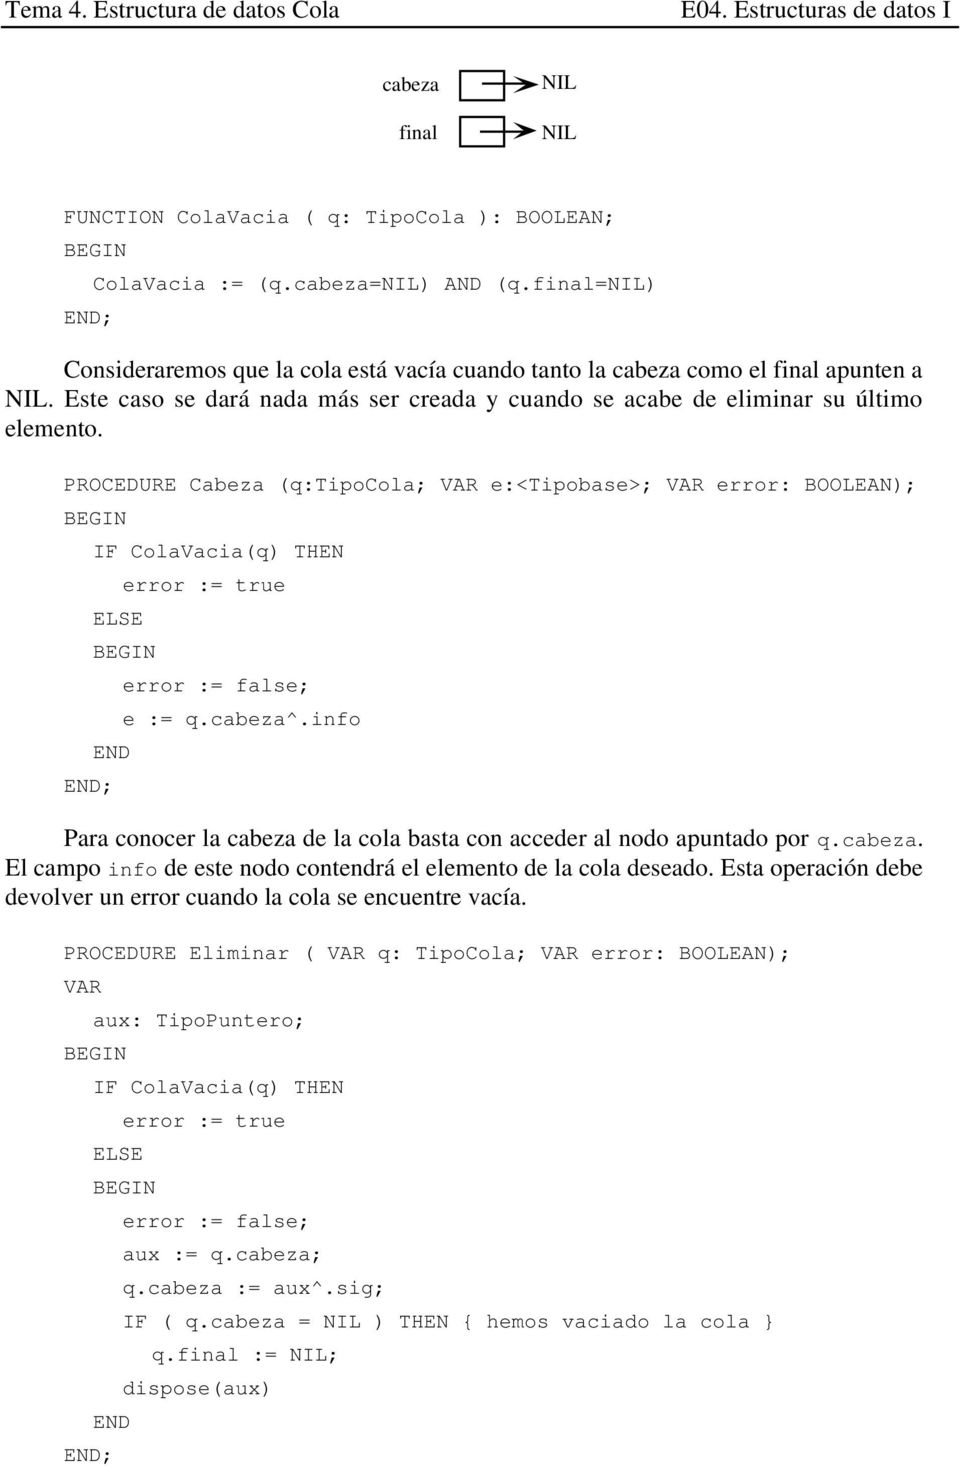 PROCEDURE Cabeza (q:tipocola; VAR e:<tipobase>; VAR error: BOOLEAN); IF ColaVacia(q) THEN ELSE error := true END error := false; e := q.cabeza^.